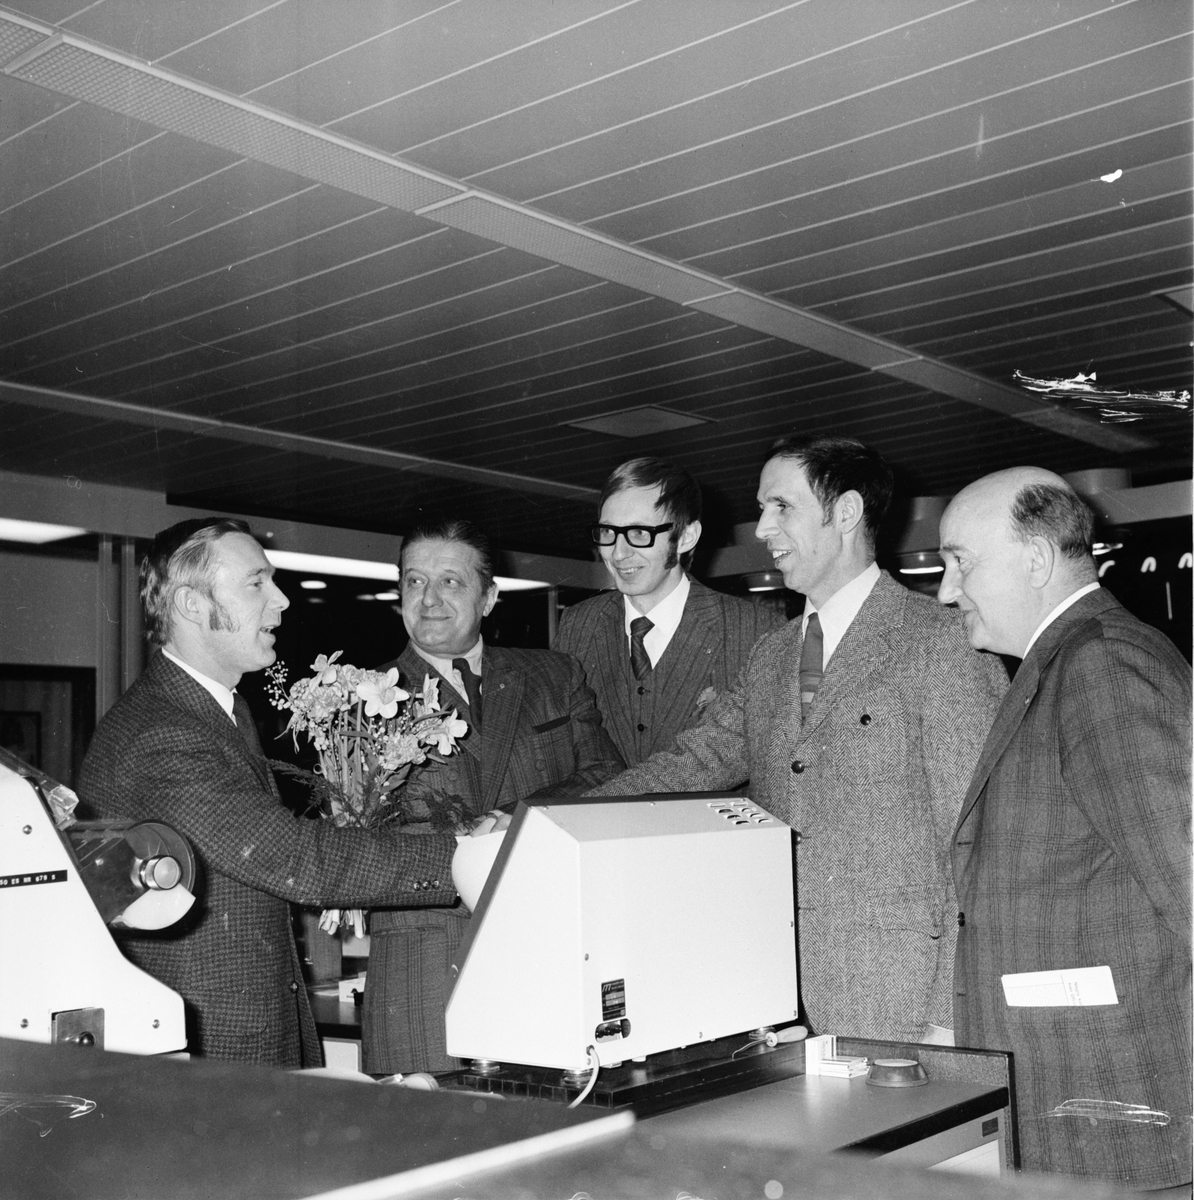 Lions Arbrå på besök hos sparbanken.
Juni 1972